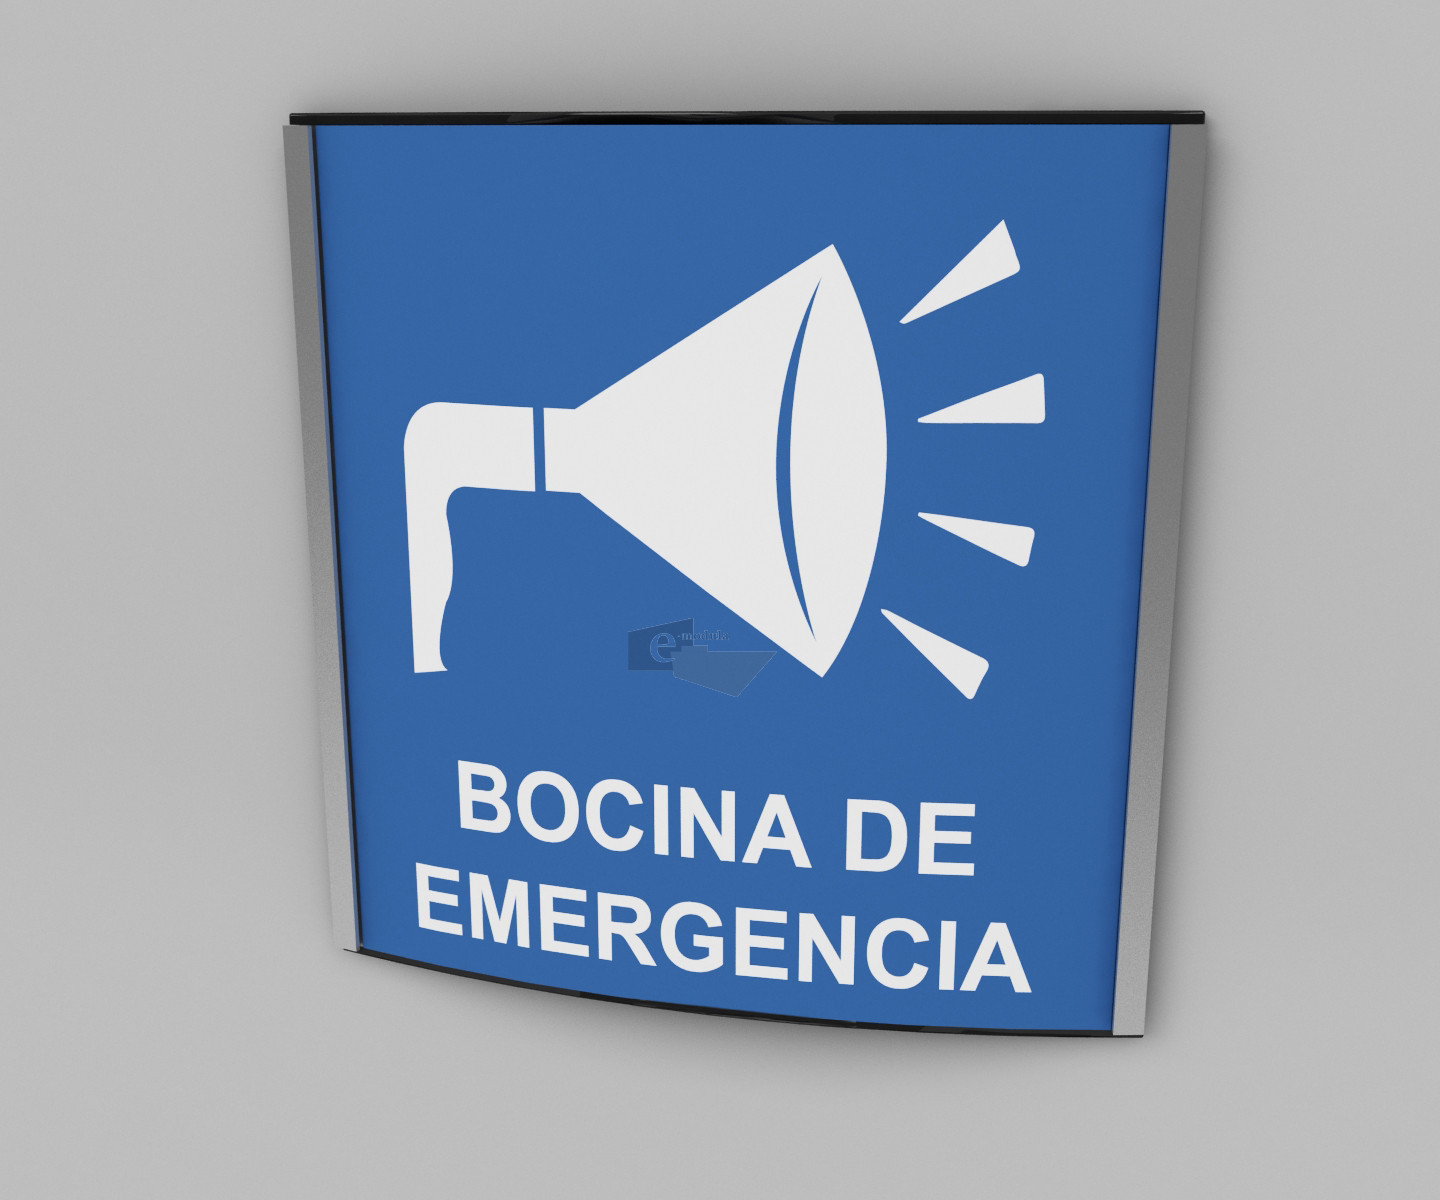 20x20cm / bocina de emergencia / señal / letrero / protección civil / curvo / blanco con fondo azul